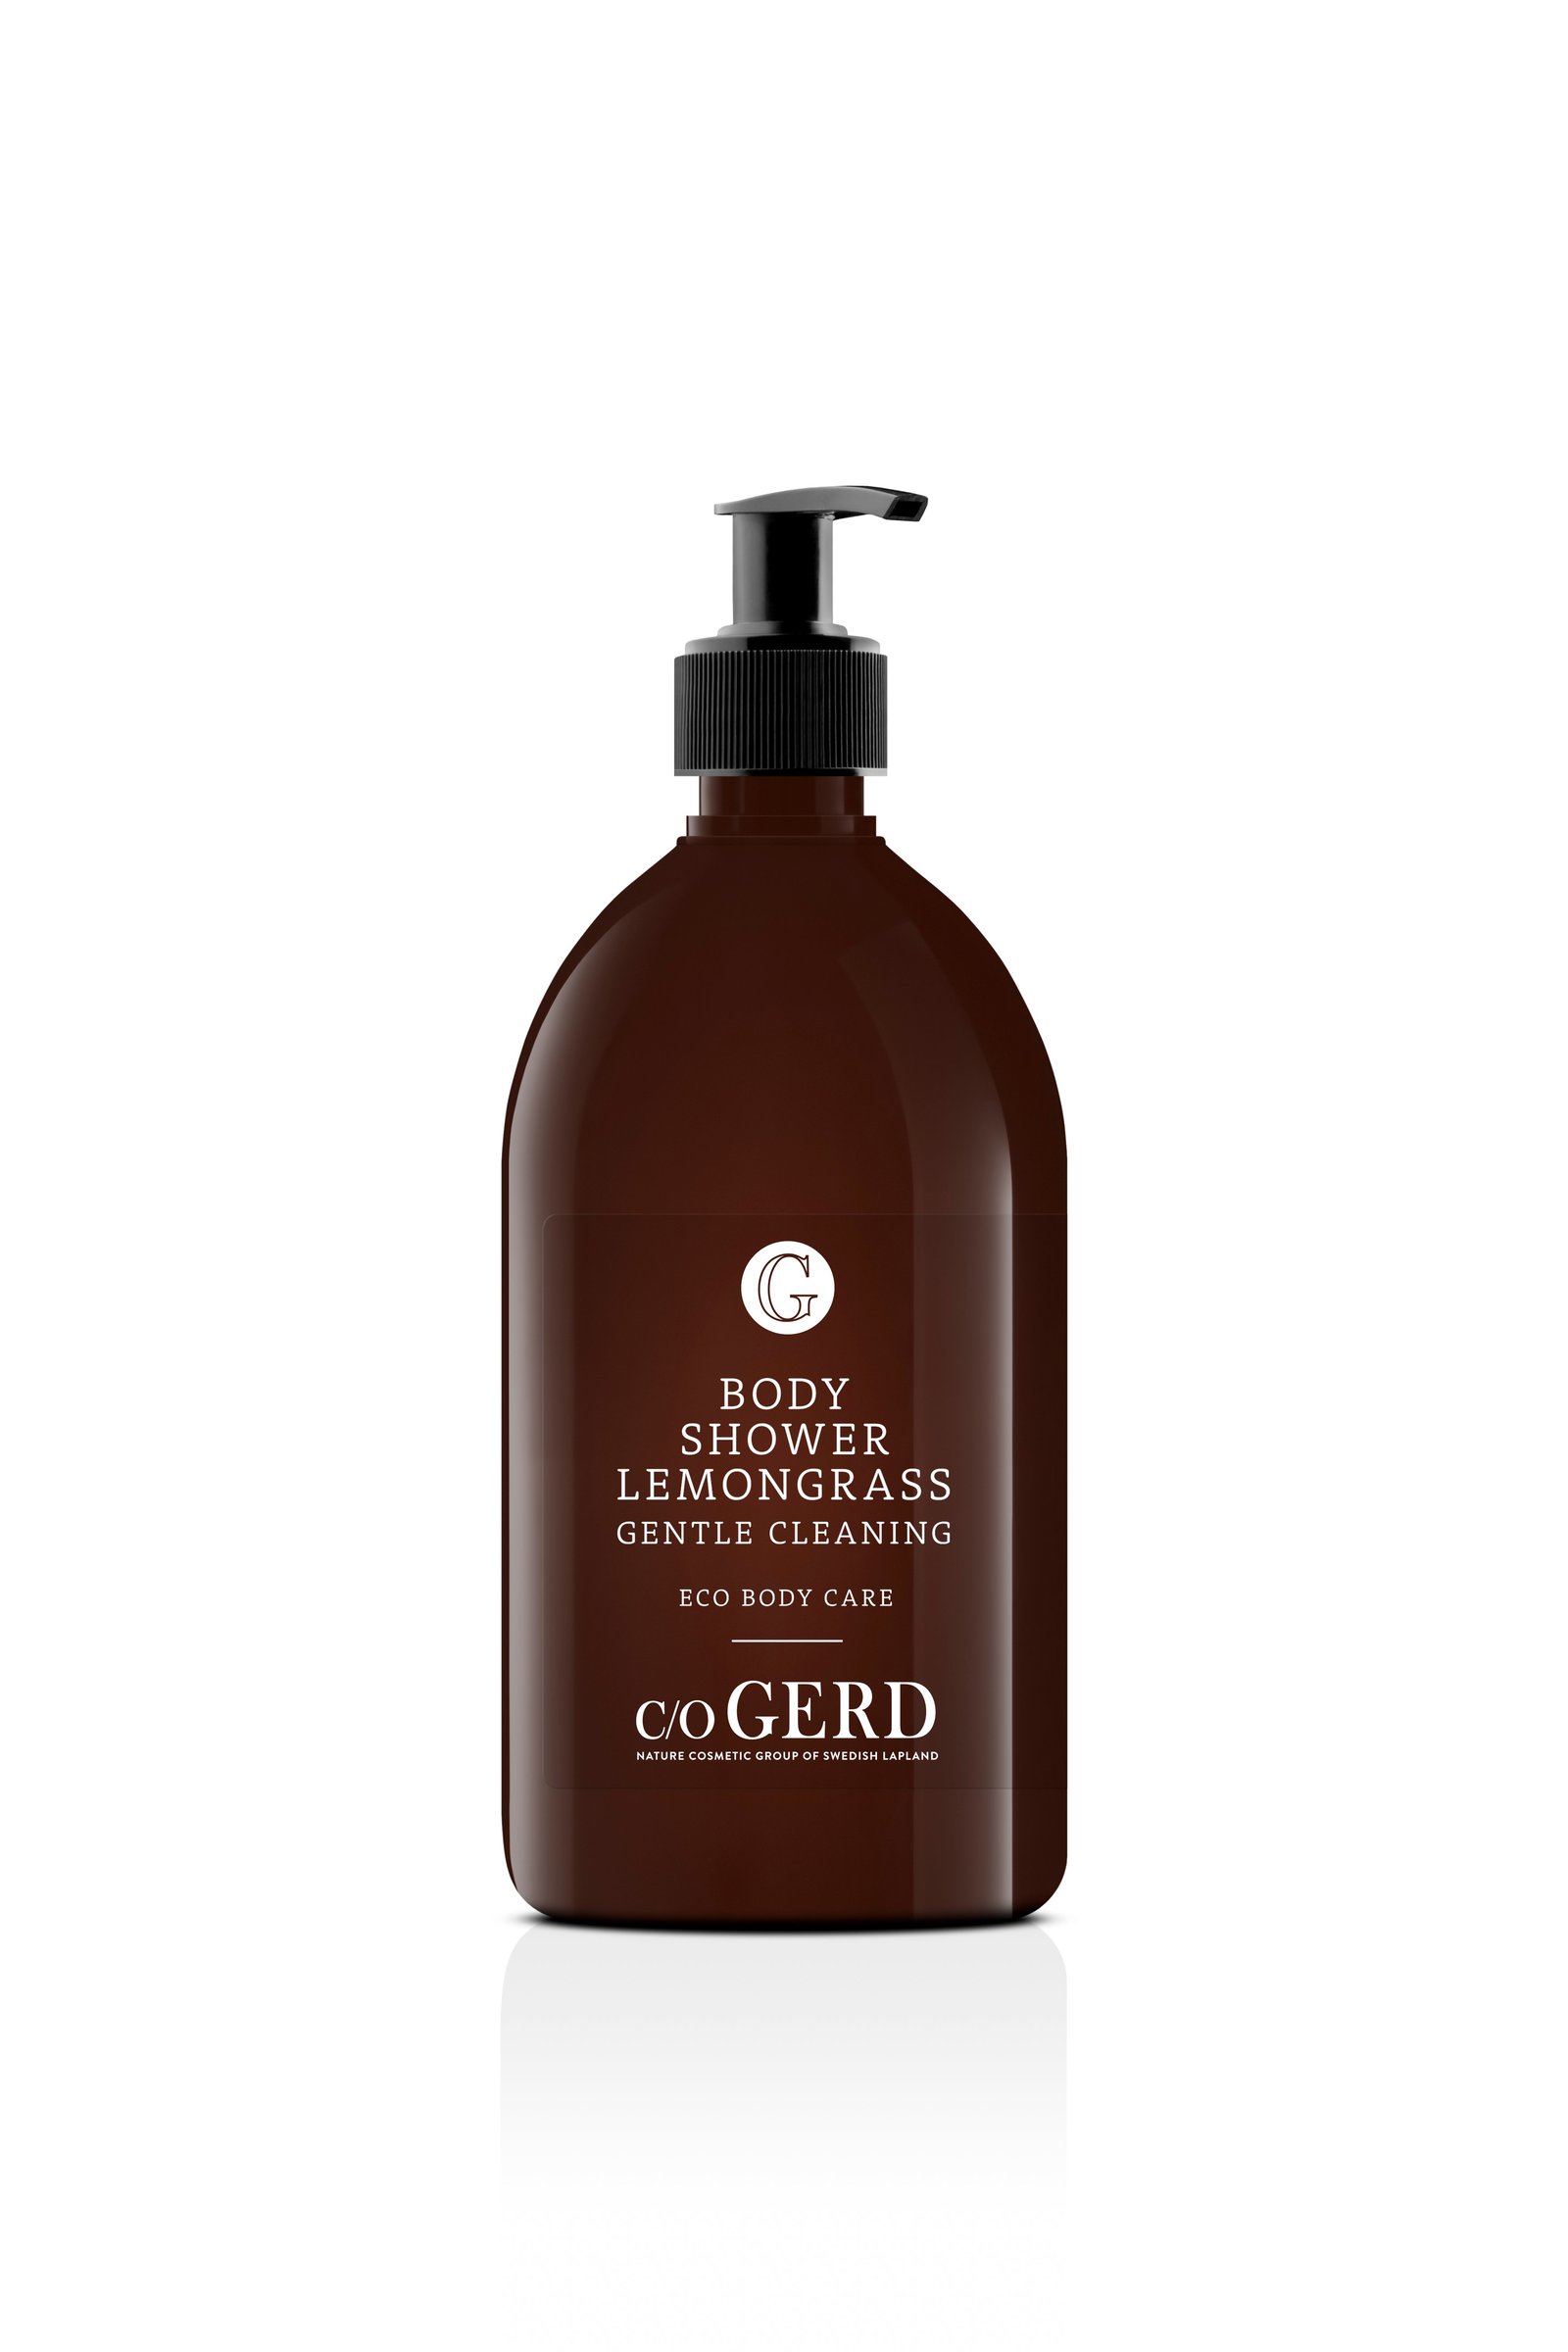 c/o GERD Body Shower Lemongrass 500ml